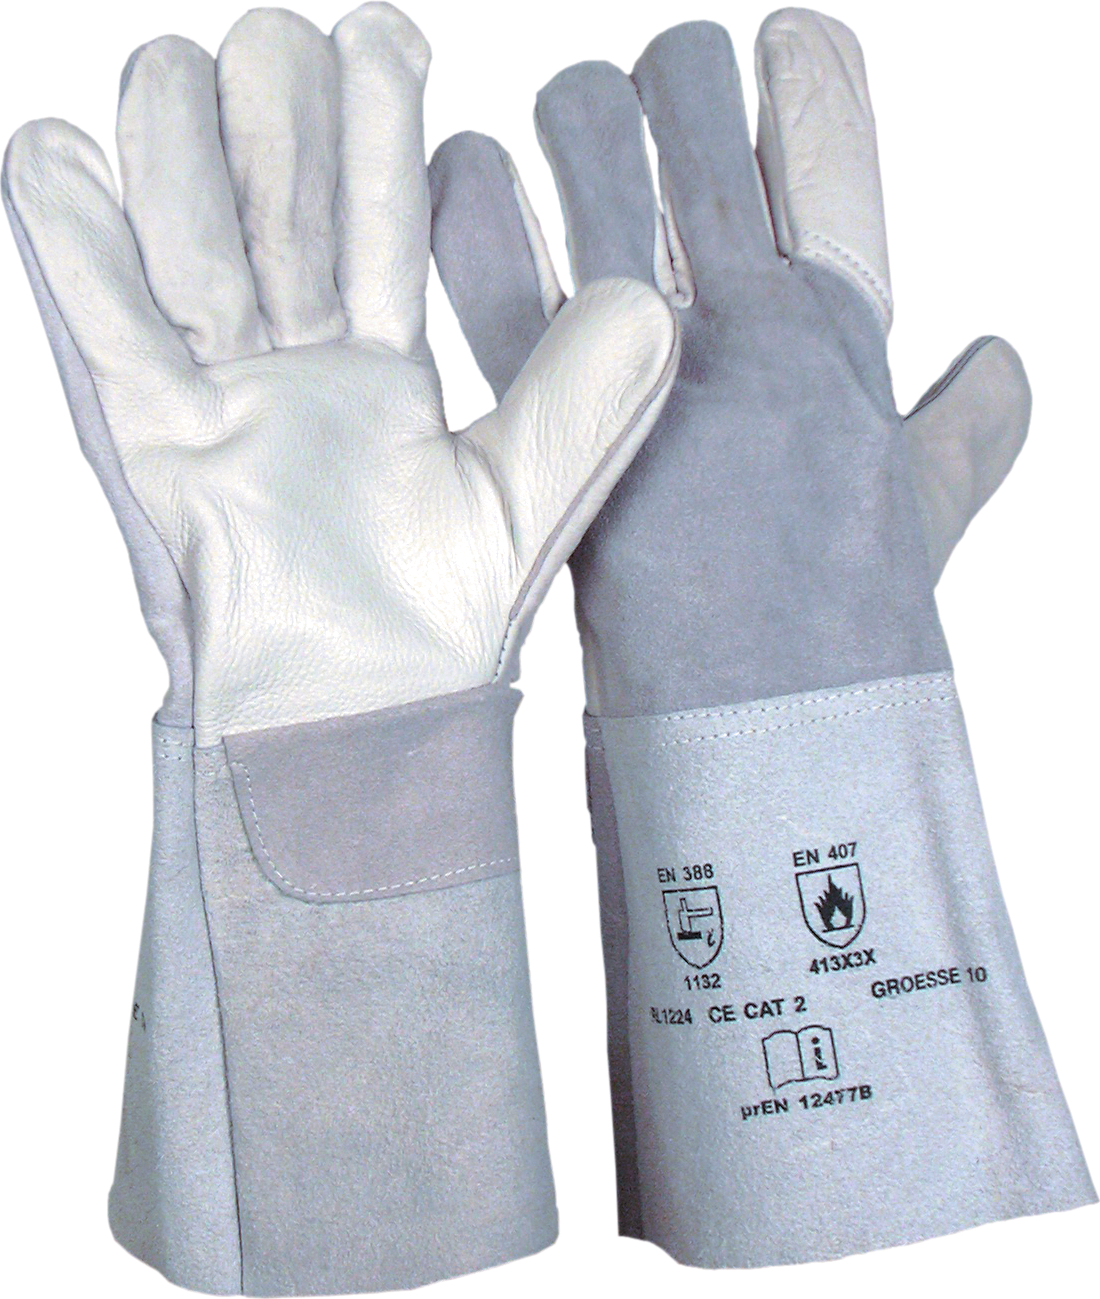 Schweißerhandschuh Spaltleder zum MIG/MAG Schweißen L35cm 5-Finger grau Gr. 10